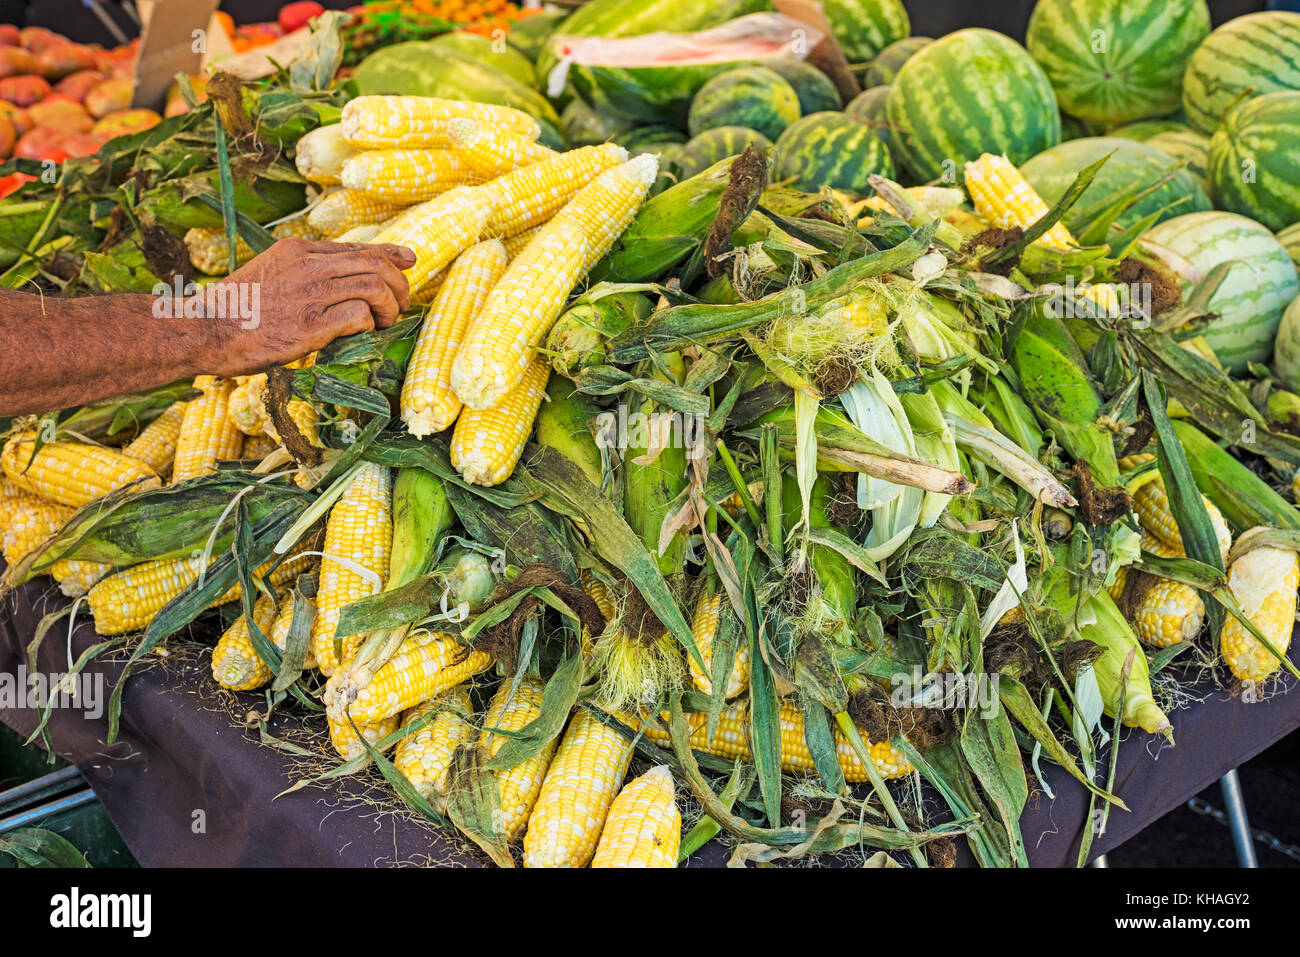 Stock photo décorticage du maïs jaune travailleur farmers market pastèques Banque D'Images